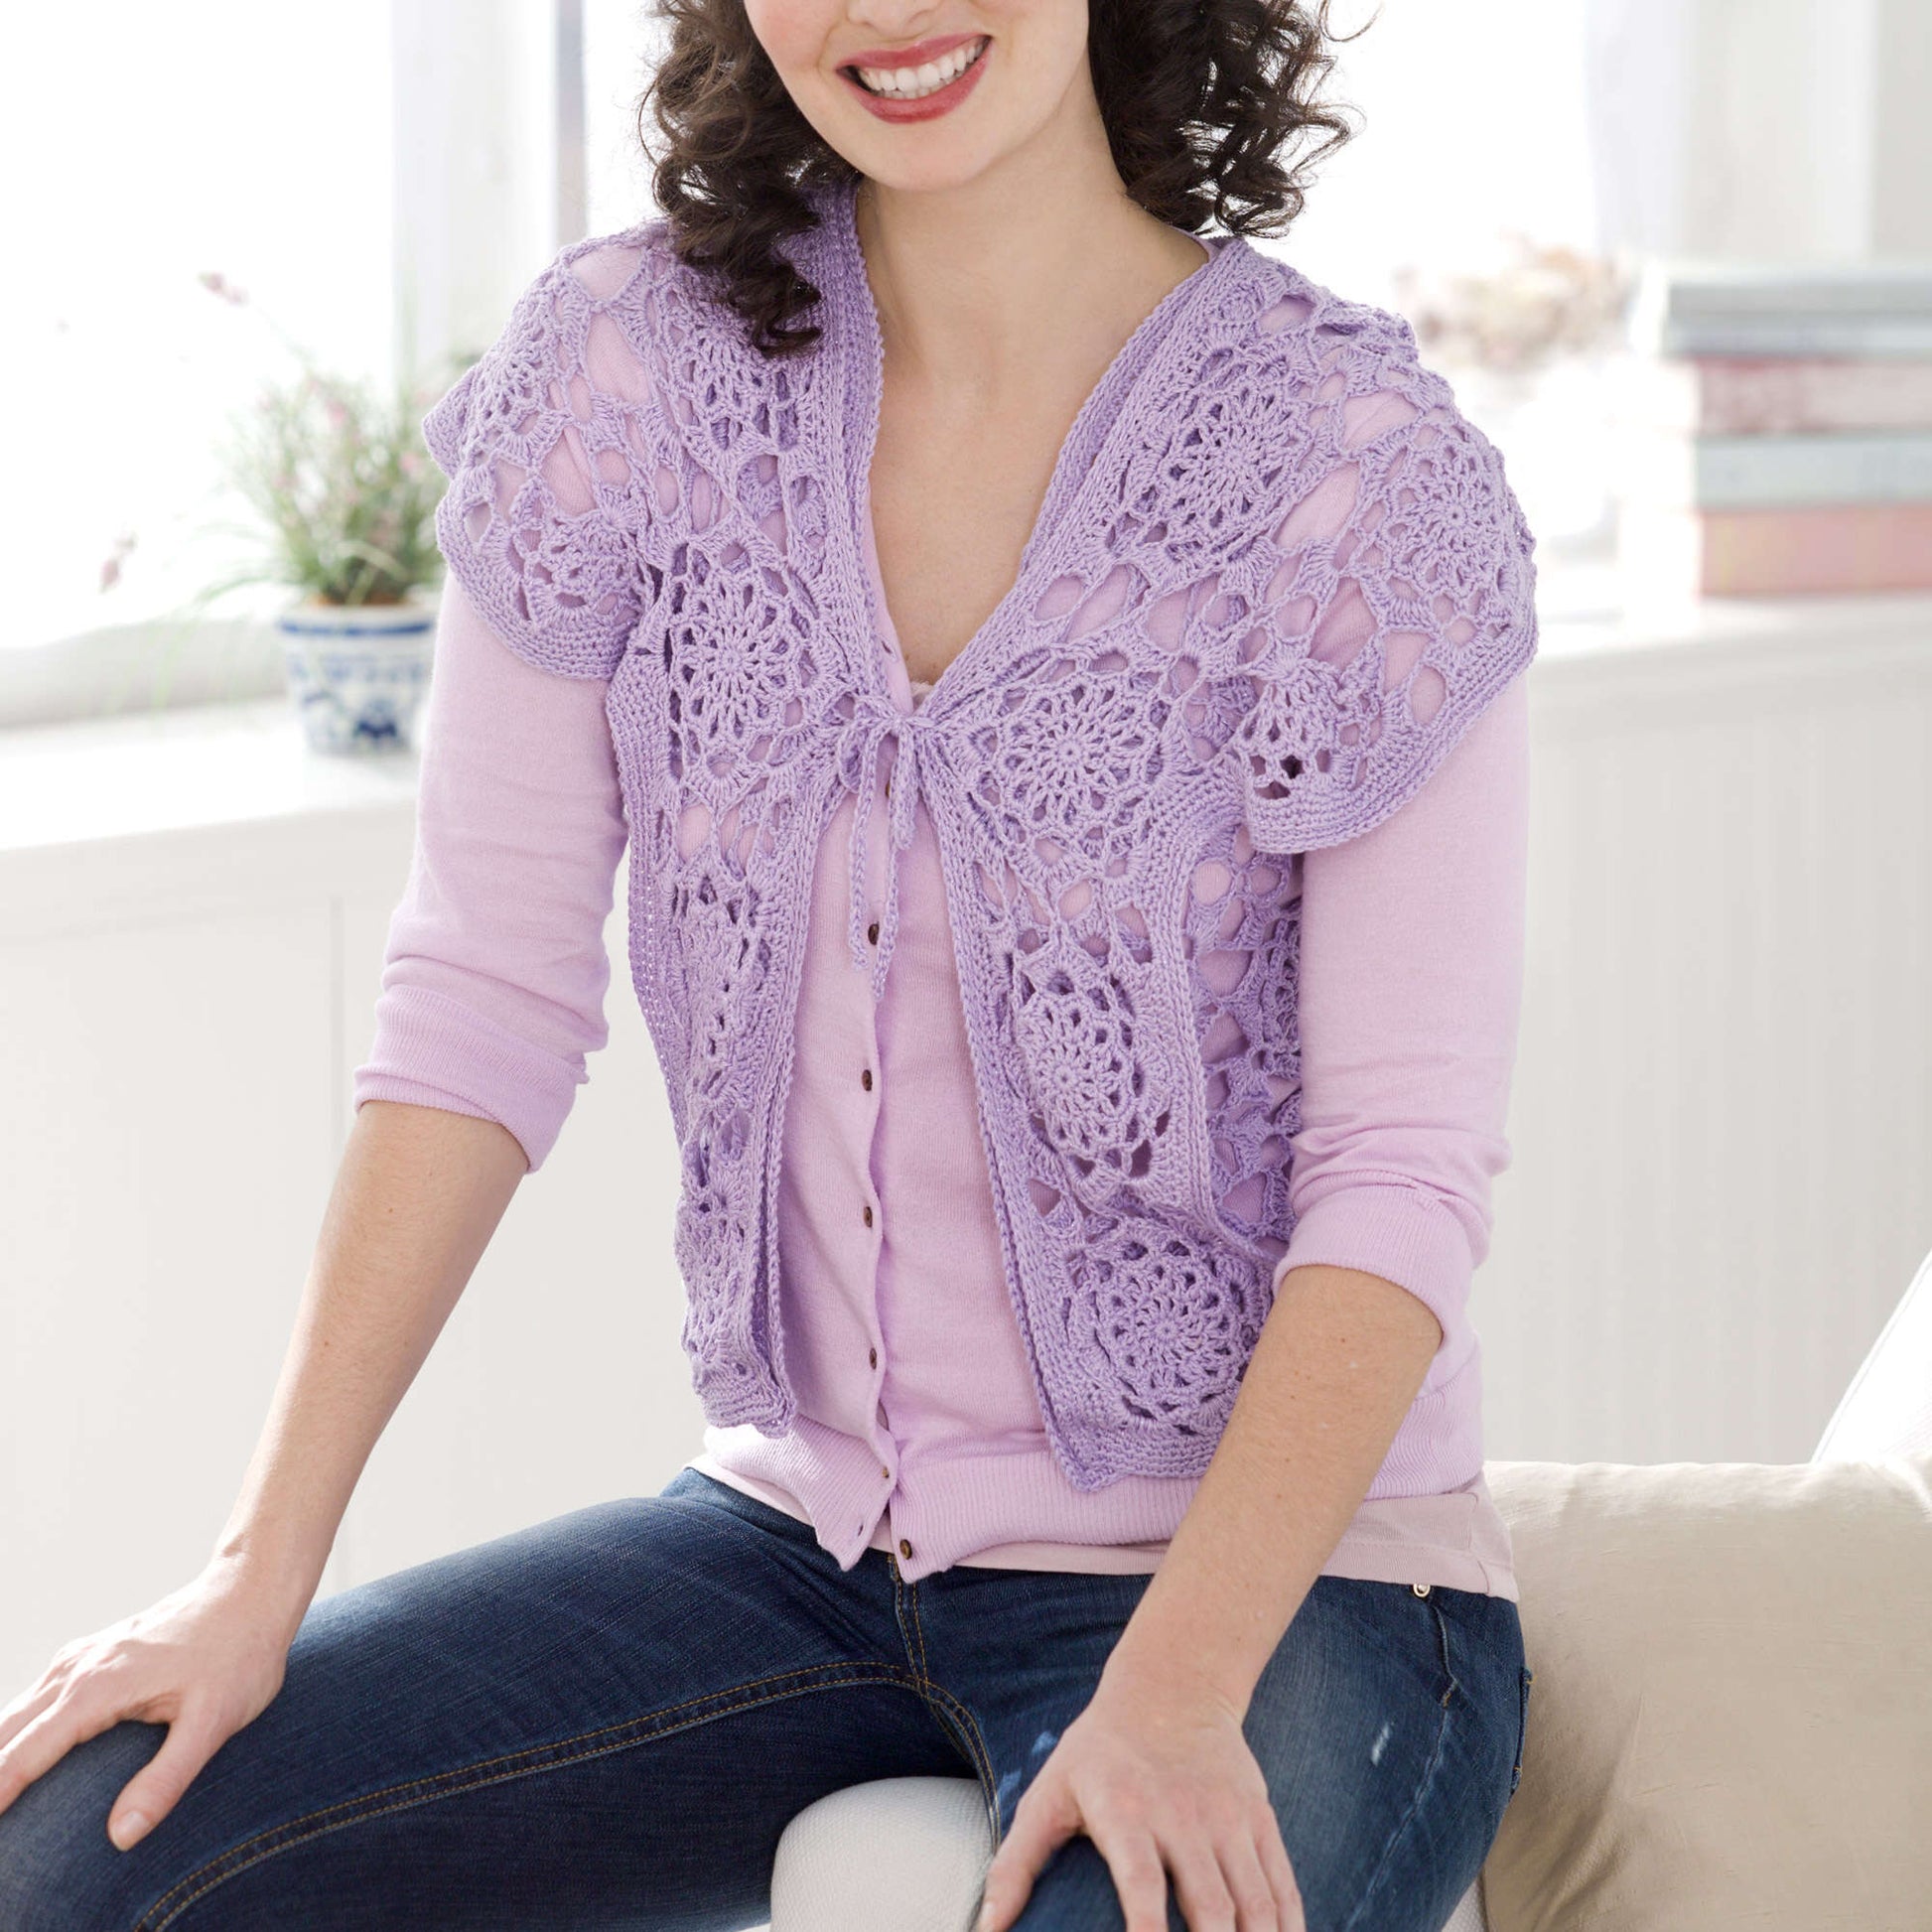 Aunt Lydia's Lovely Lace Vest Pattern Pattern